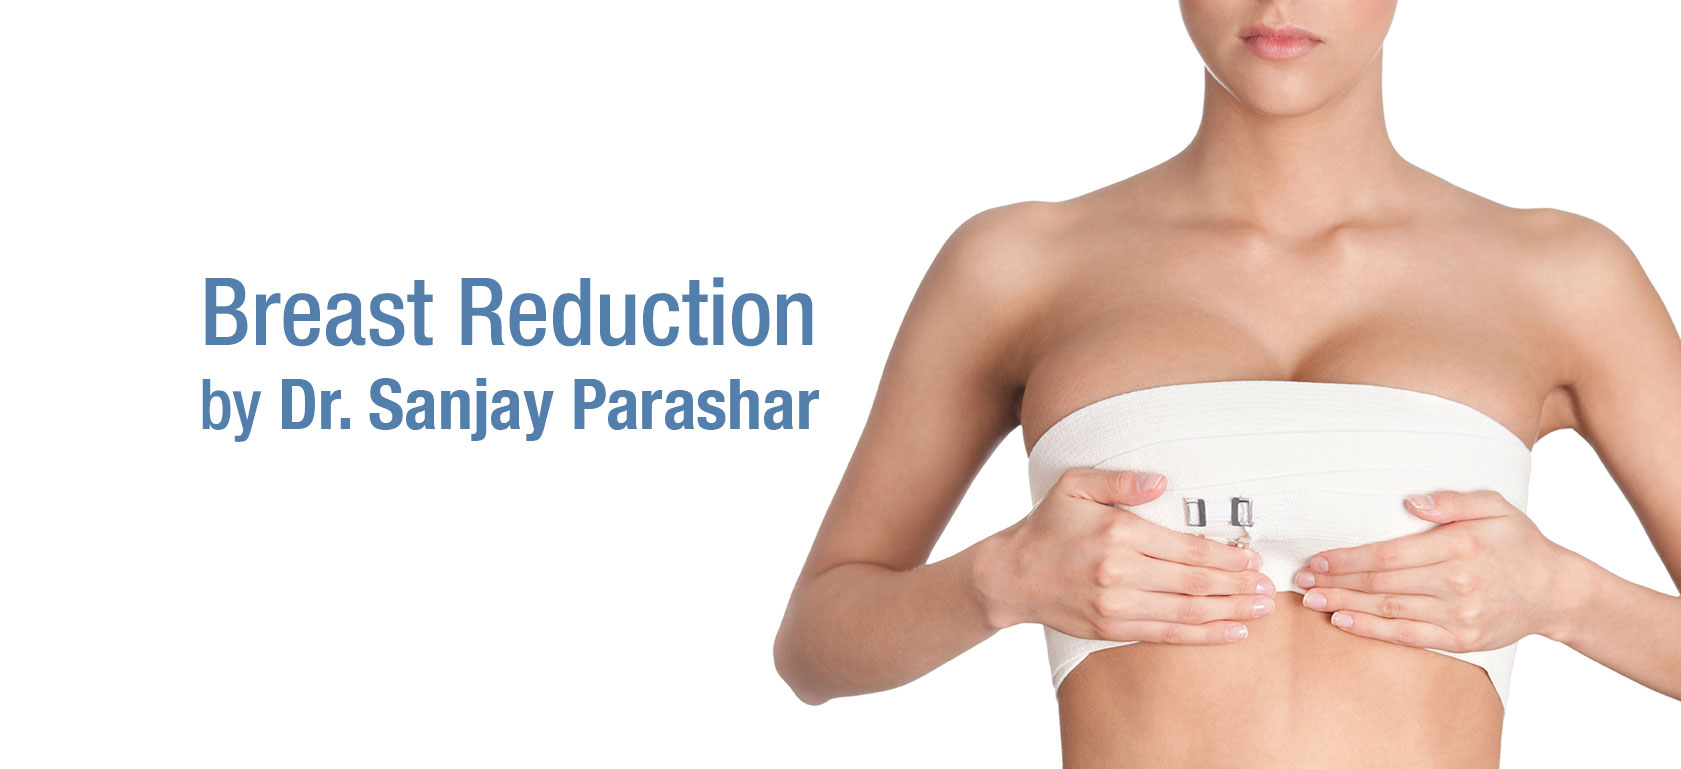 Breast Reduction Dubai - By Dr Sanjay Parashar